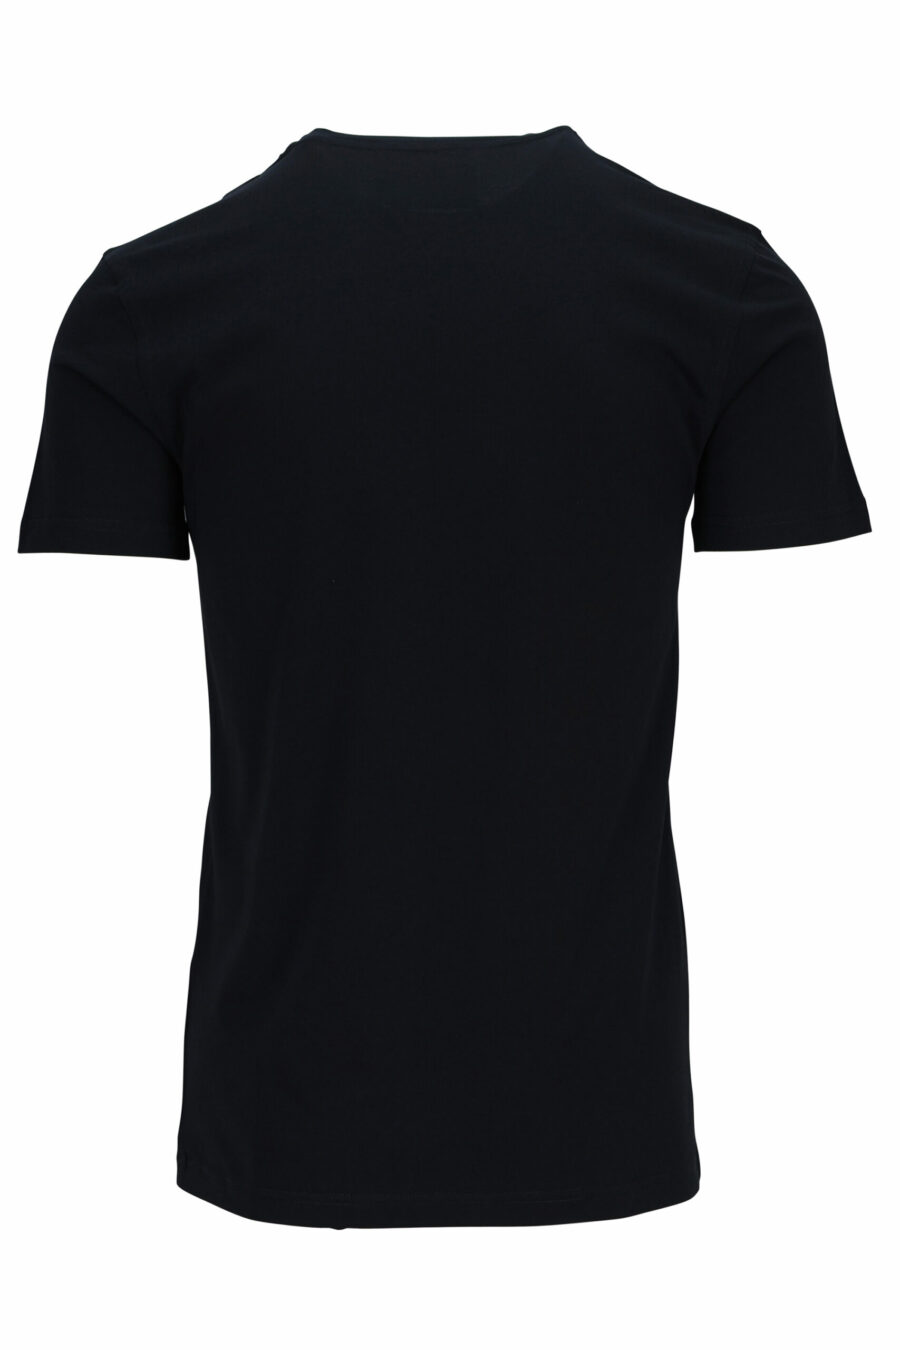 T-shirt preta com maxilogo de alfaiate "teddy" - 667113108032 1 1 à escala